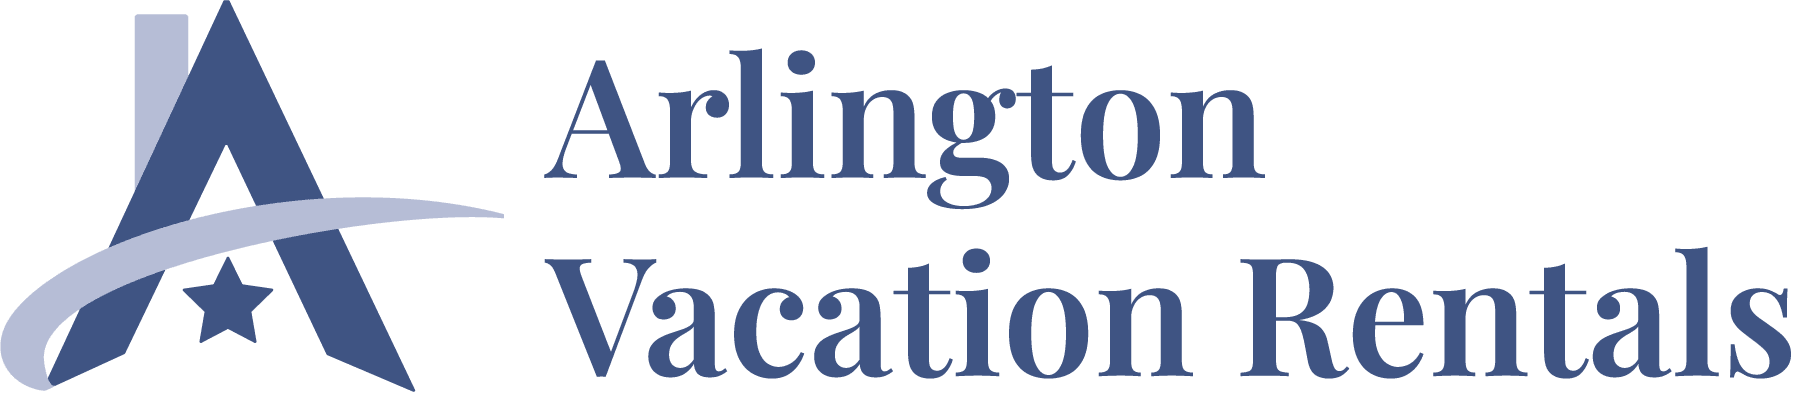 Arlington Vacation Rentals